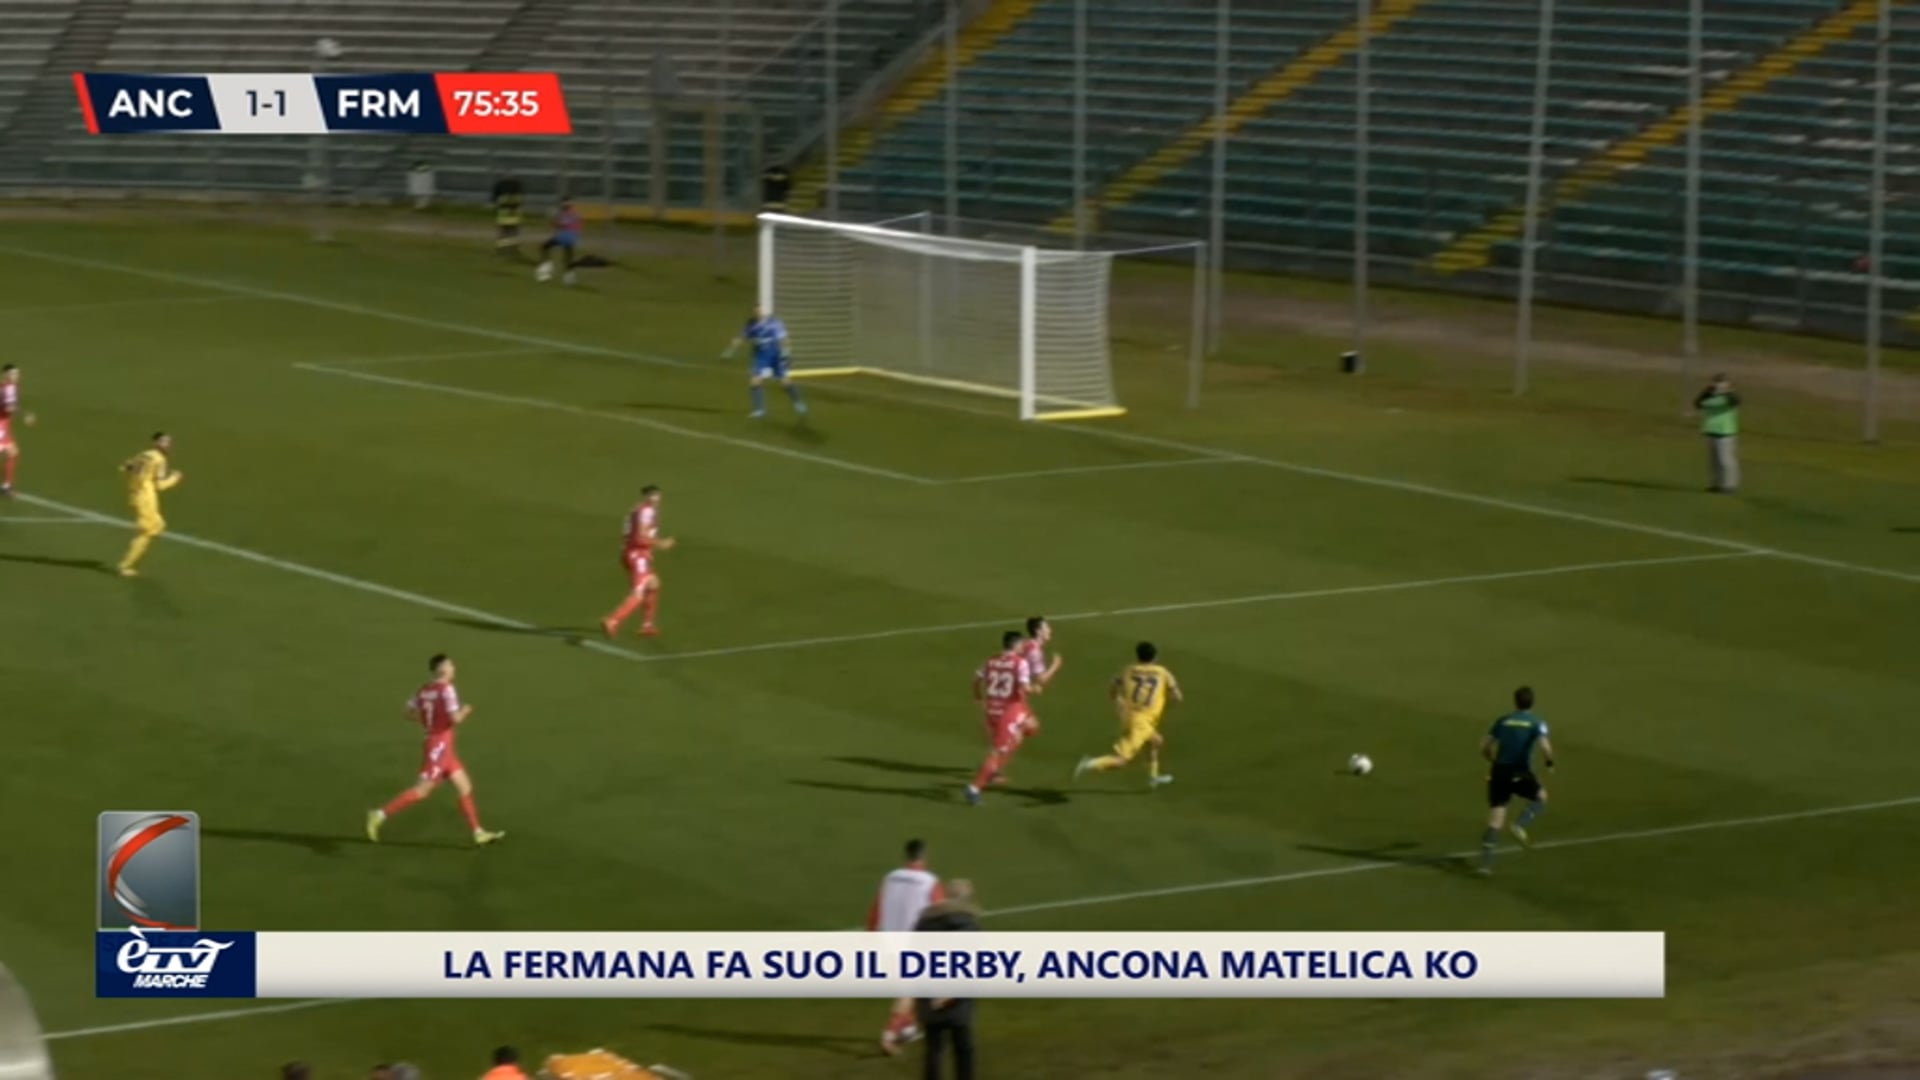 Serie C. La Fermana fa suo il derby, Ancona Matelica battuta